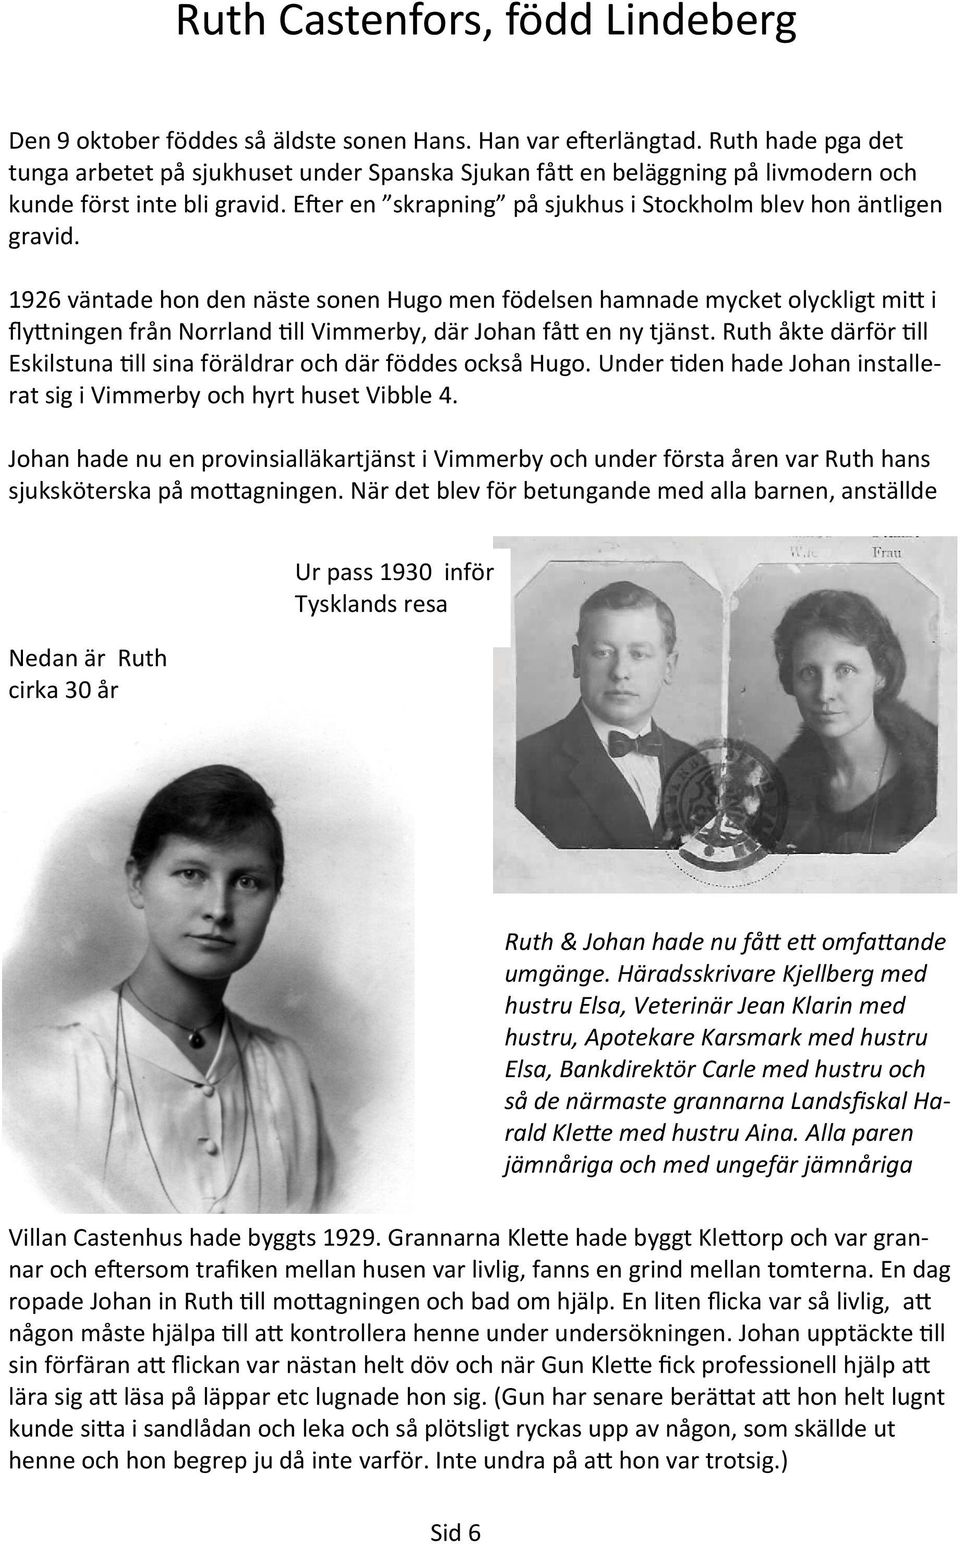 1926 väntade hon den näste sonen Hugo men födelsen hamnade mycket olyckligt mi i fly ningen från Norrland ll Vimmerby, där Johan få en ny tjänst.